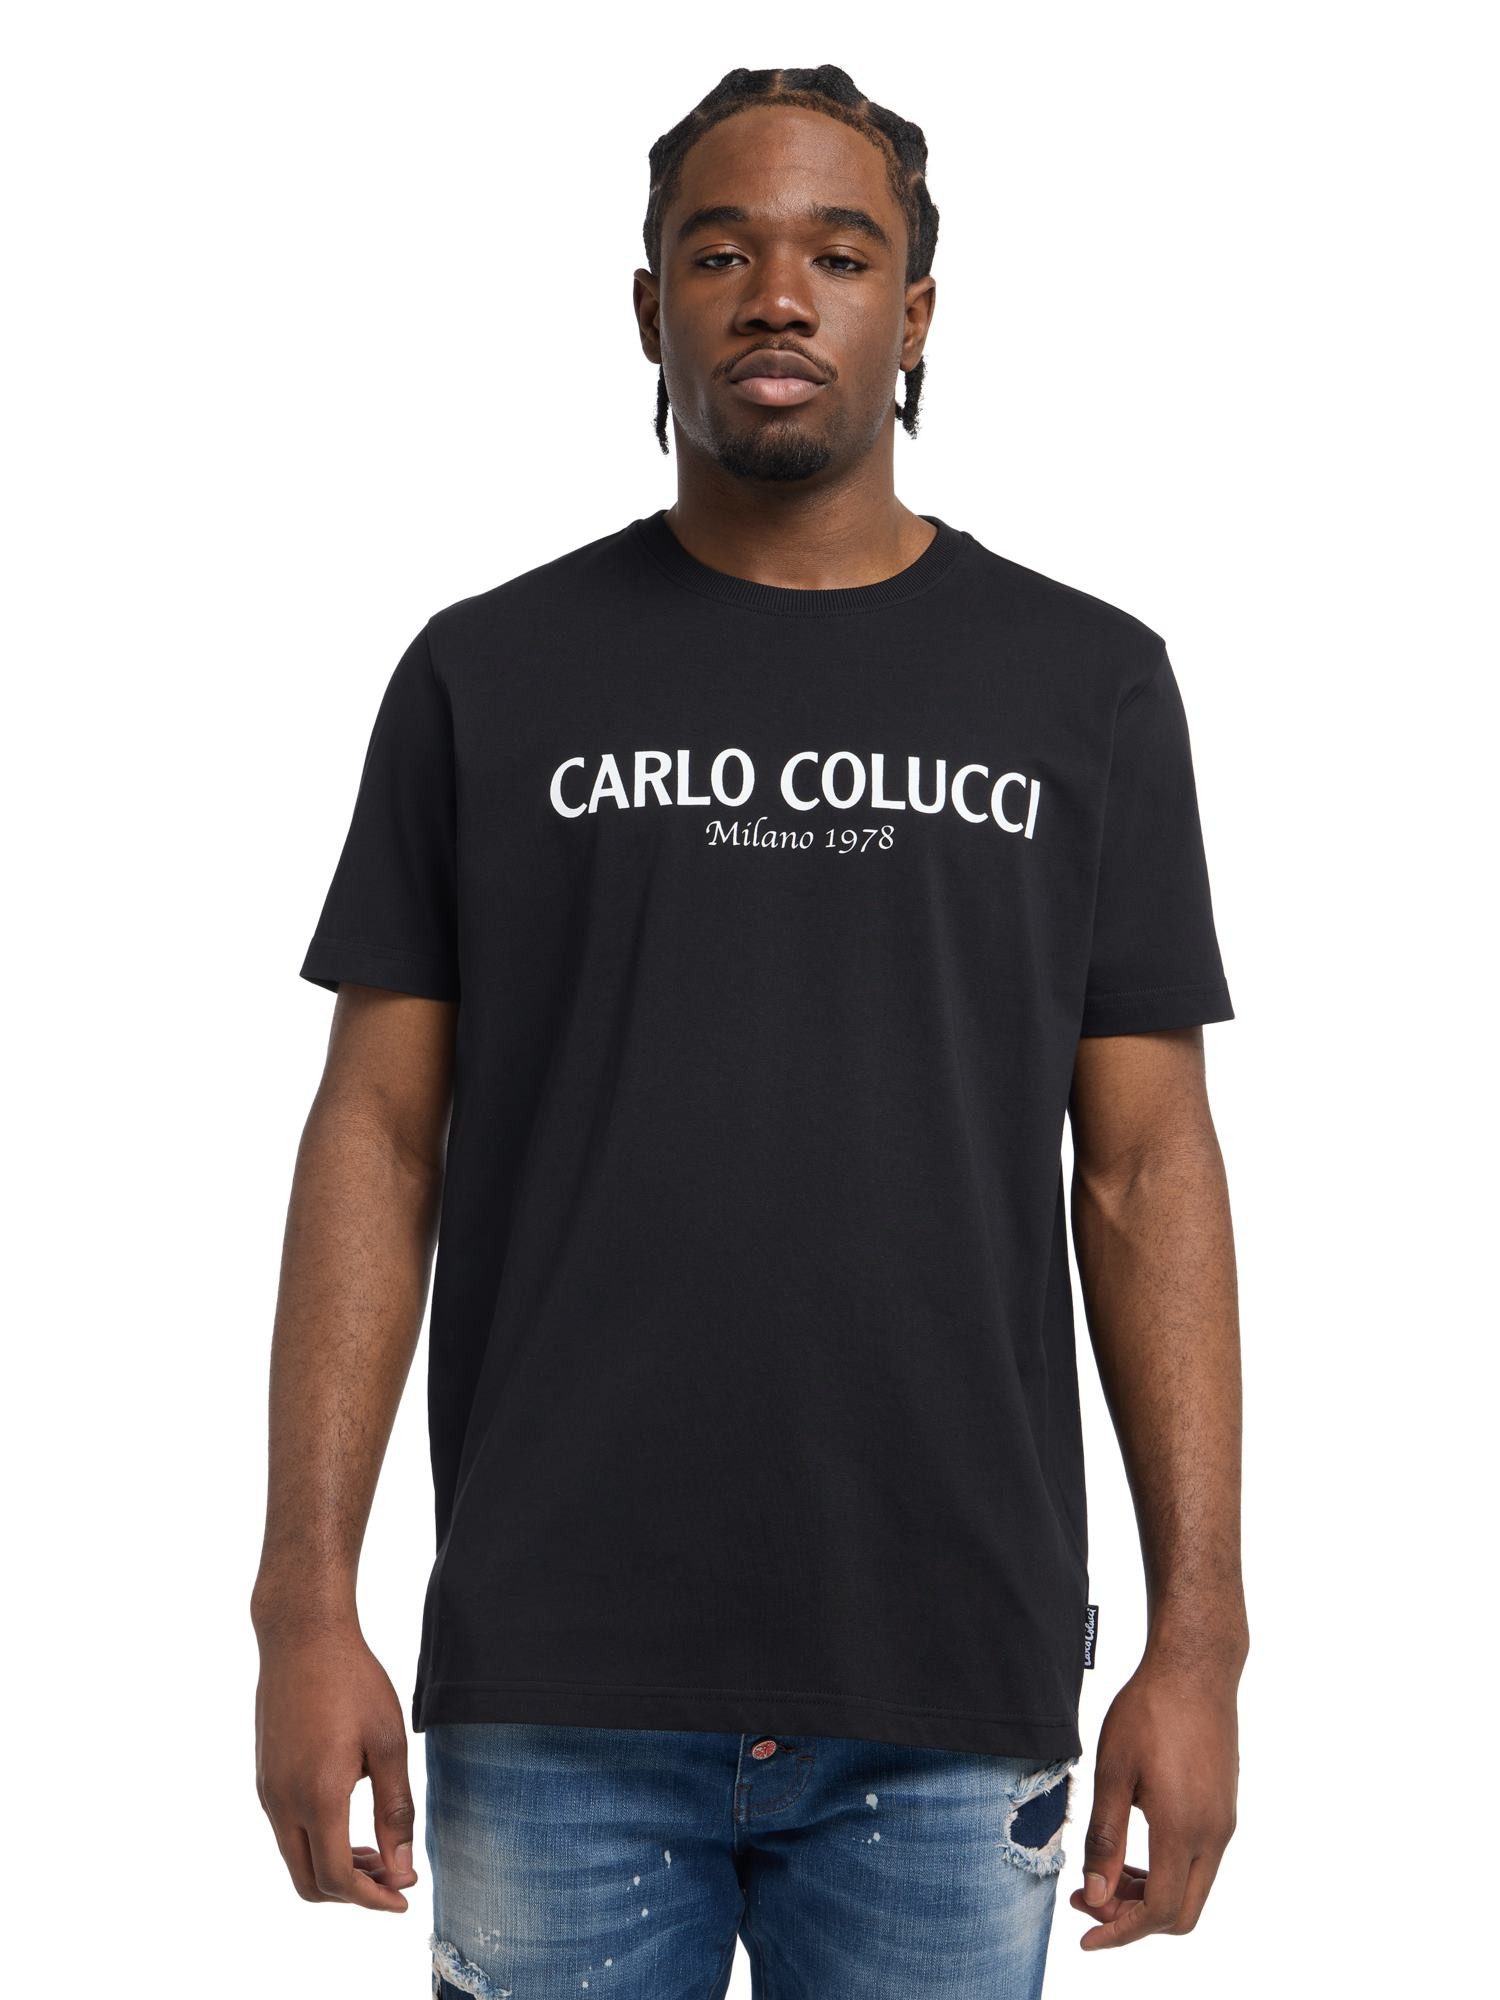 CARLO COLUCCI T-Shirt di Comun